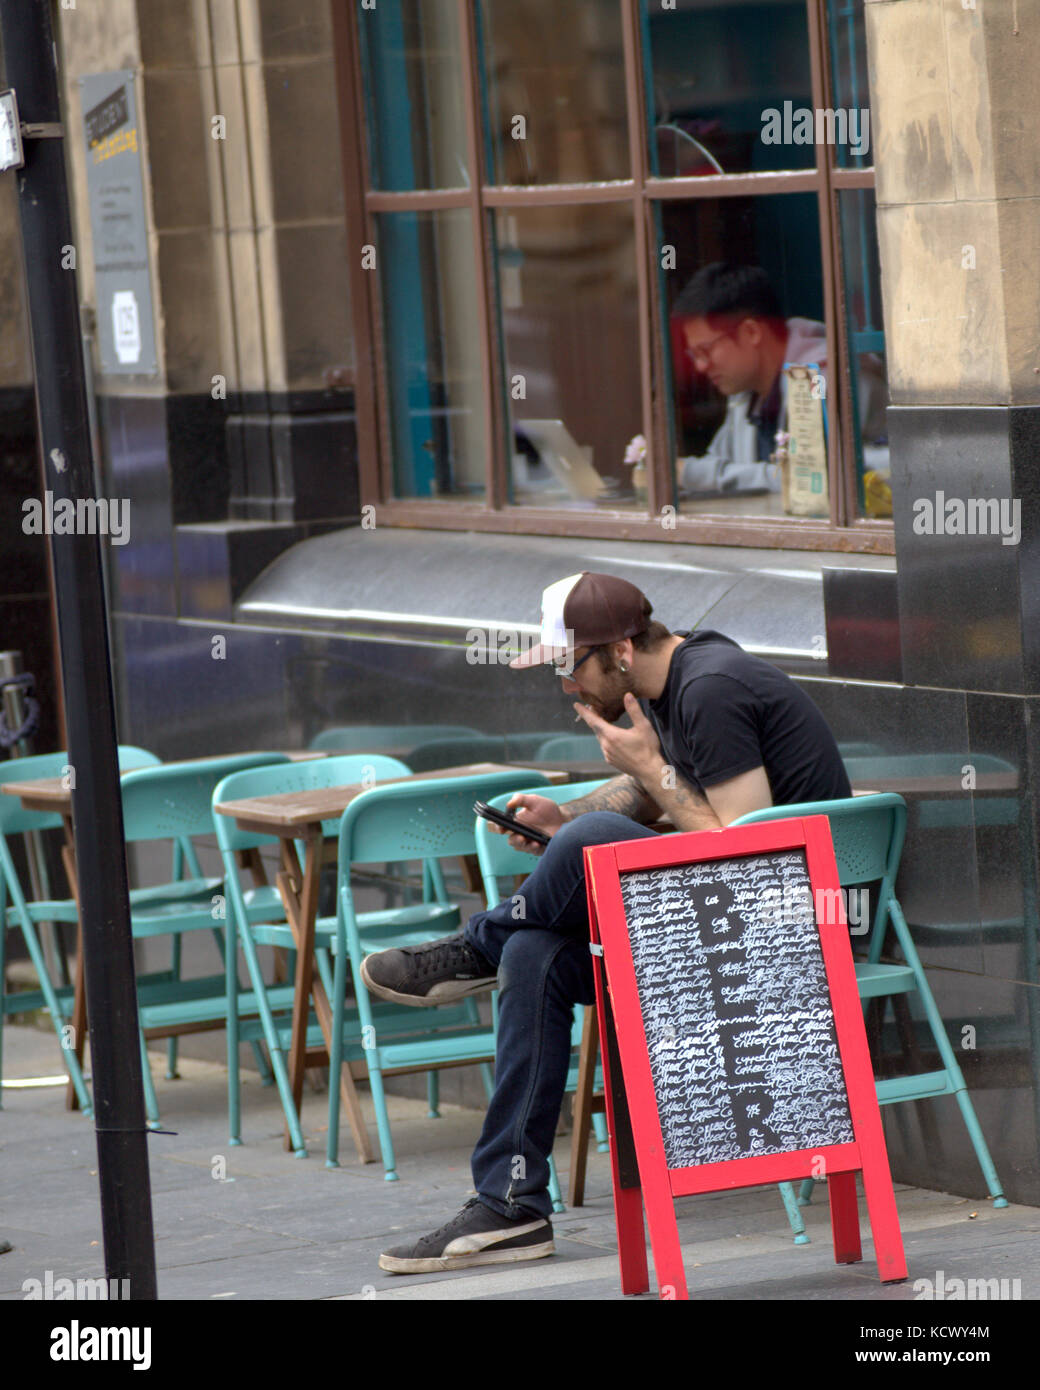 Segno di birra glasgow cafe bar esterno tabelle utilizzando lo smartphone Sigaretta fumare Foto Stock